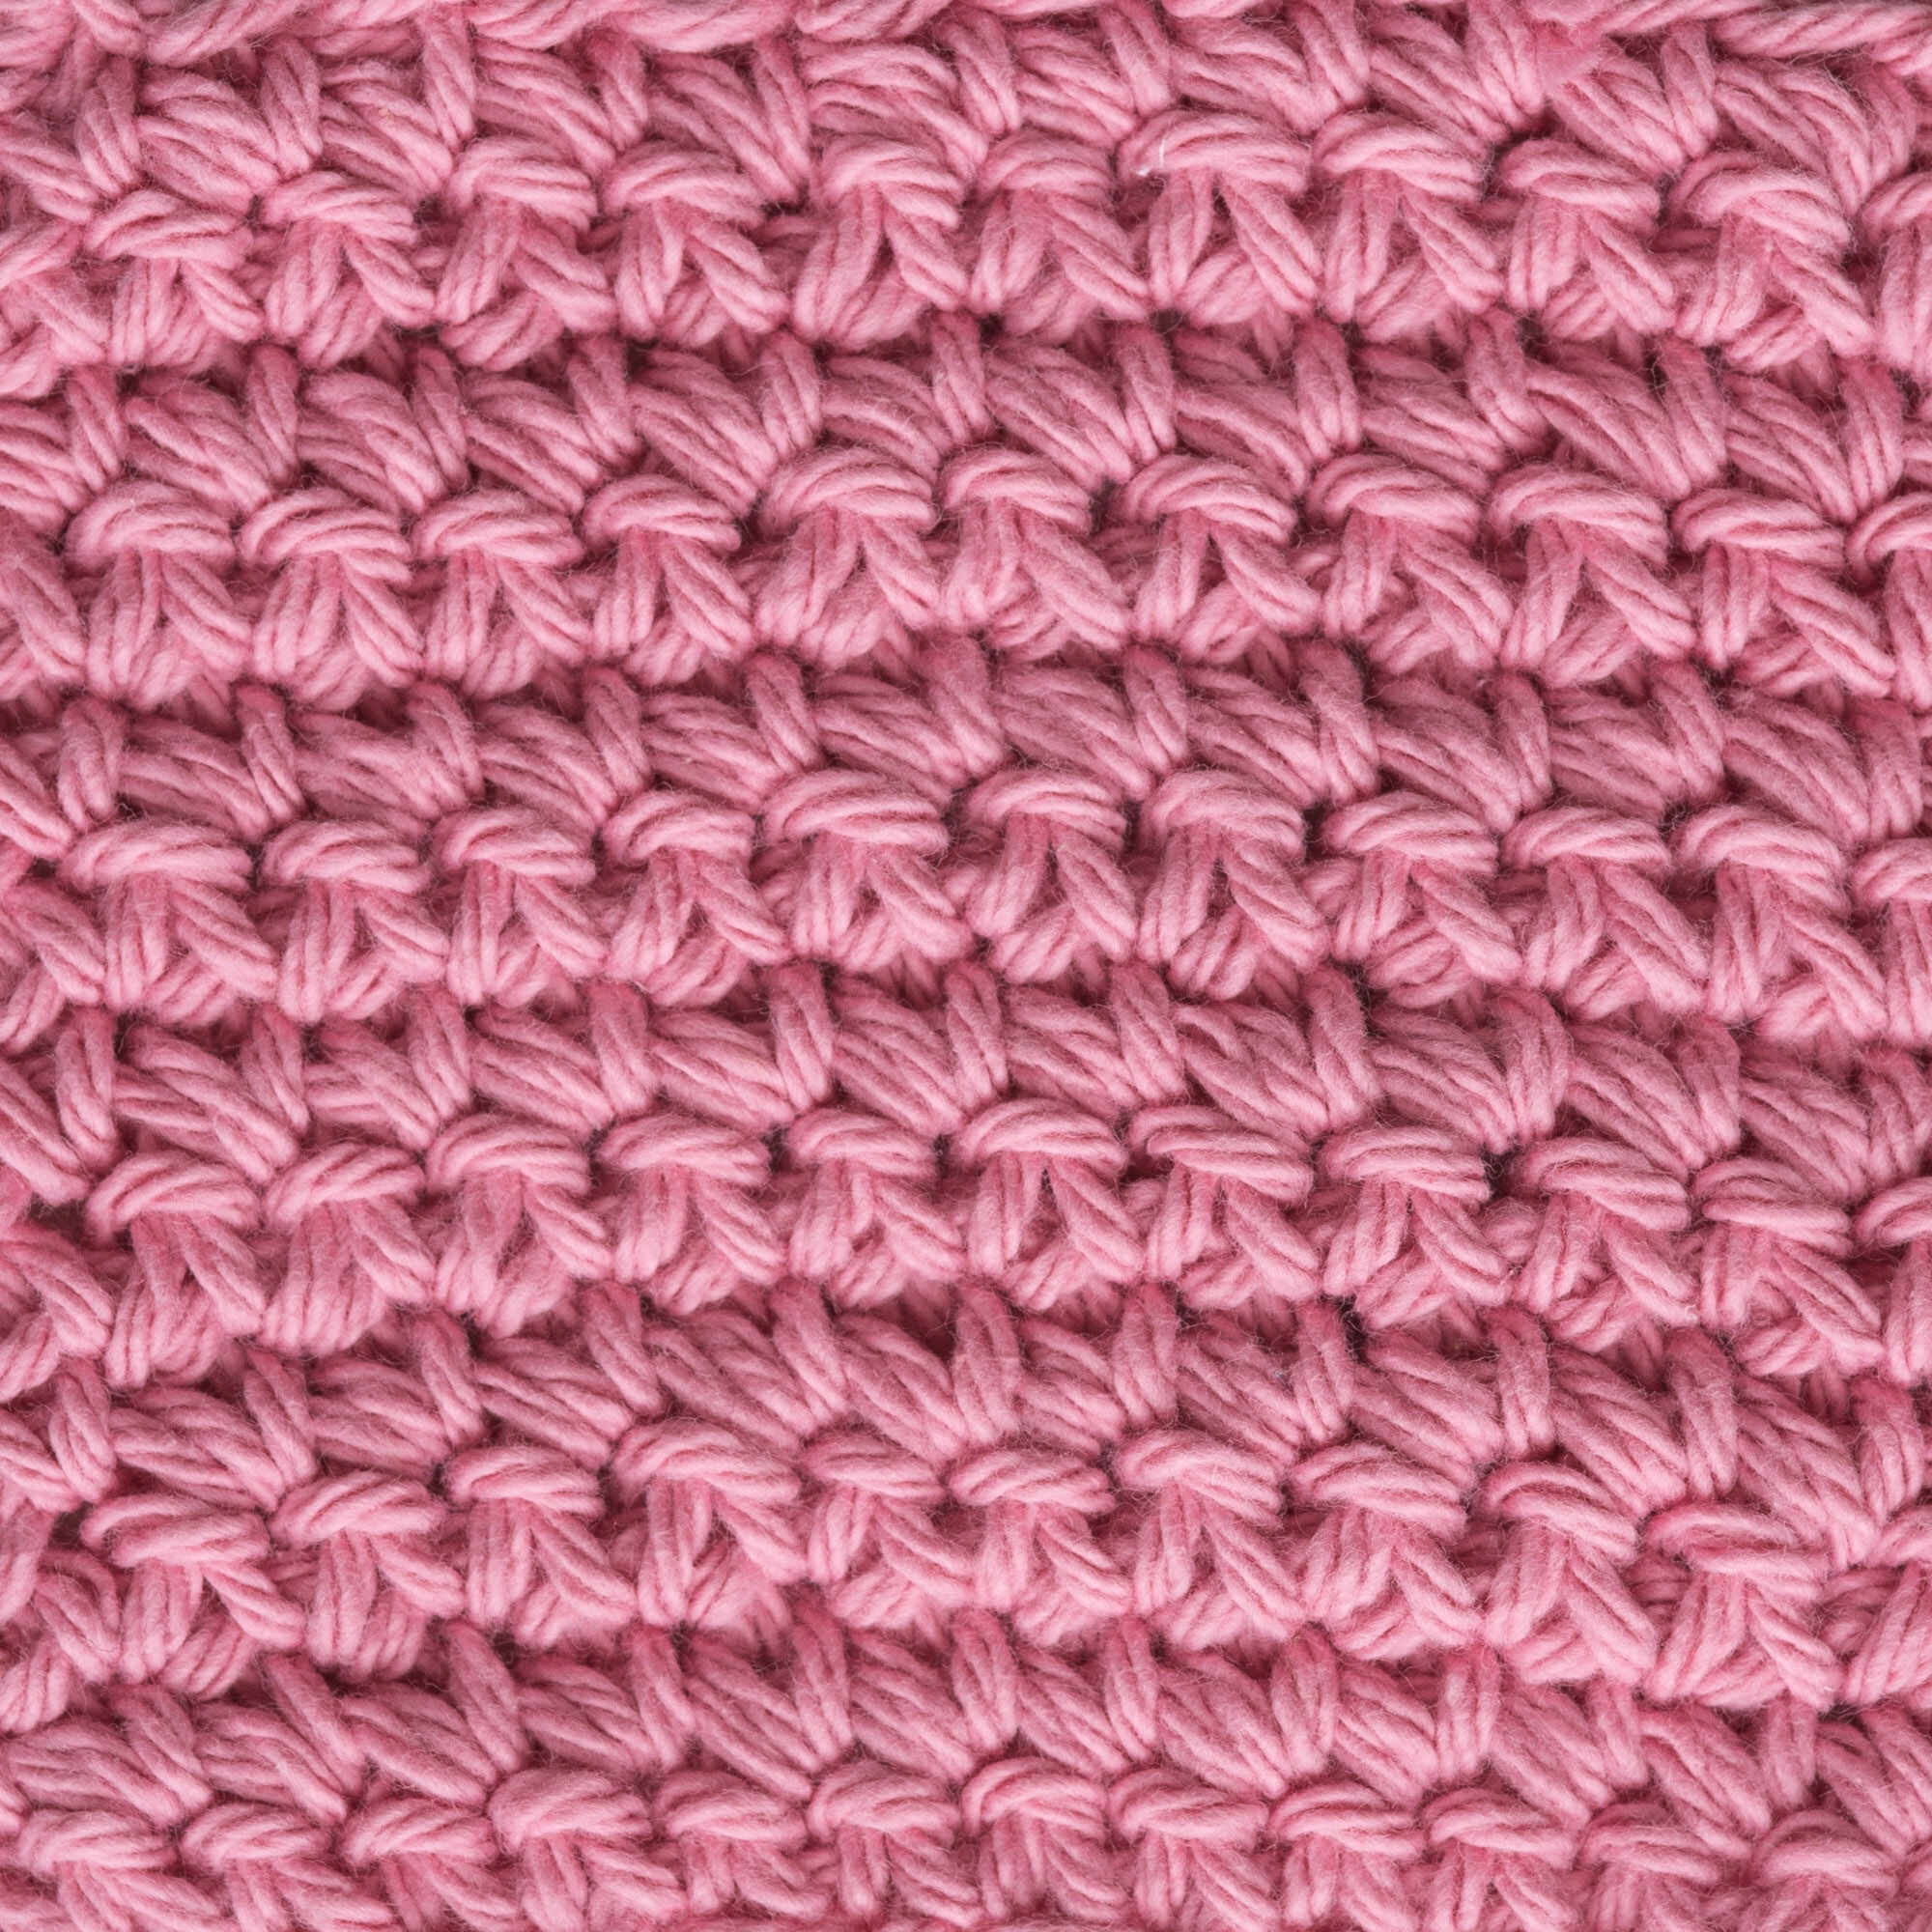 Lily Sugar'n Cream® Super Size #4 Medium Cotton Yarn, Rose Pink 4oz/113g,  200 Yards